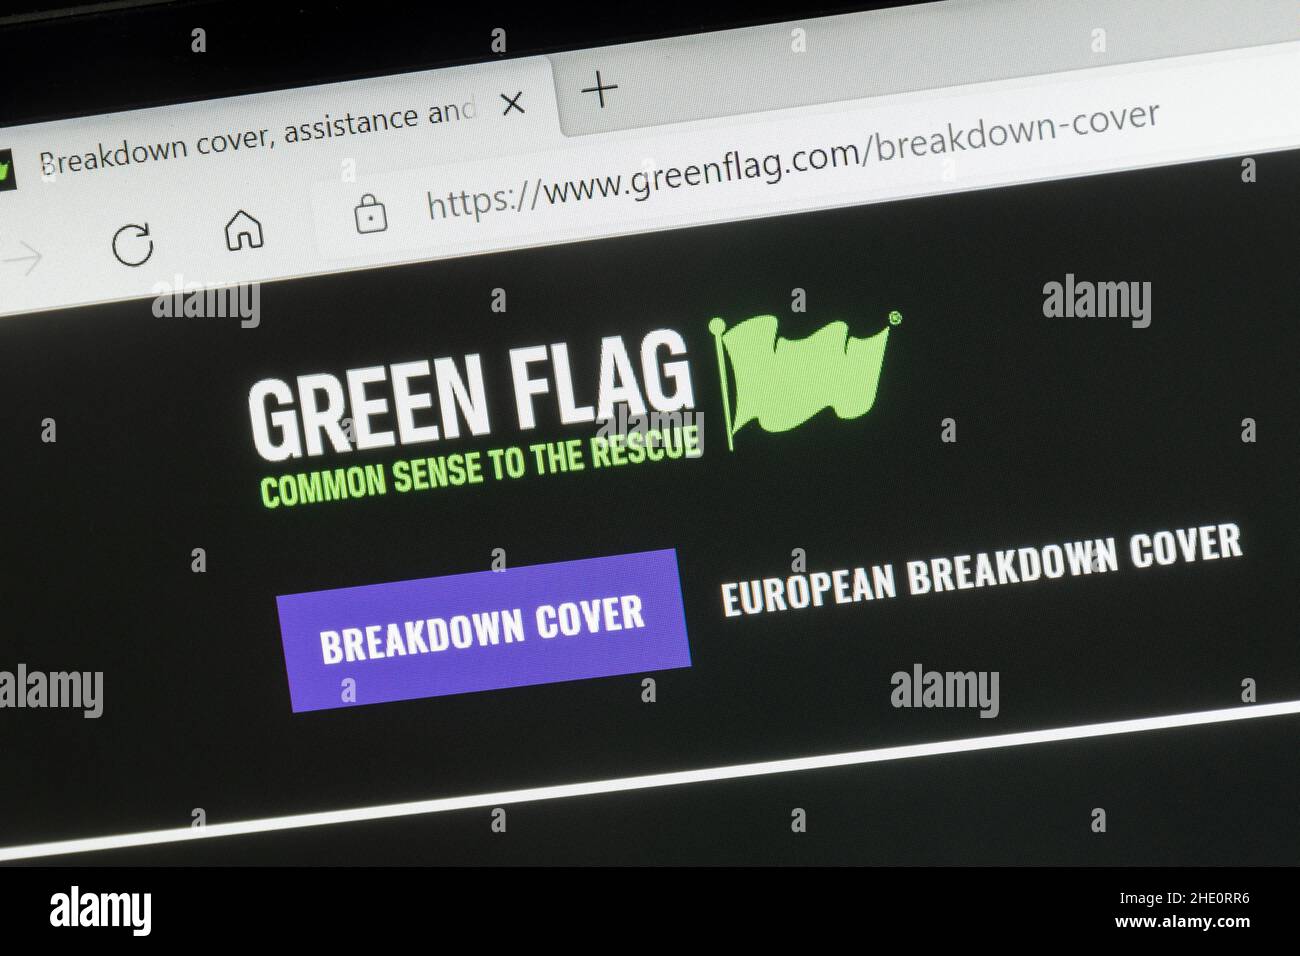 Couverture en cas de panne d'un véhicule drapeau vert, site Web de la société sur un ordinateur portable, Royaume-Uni Banque D'Images